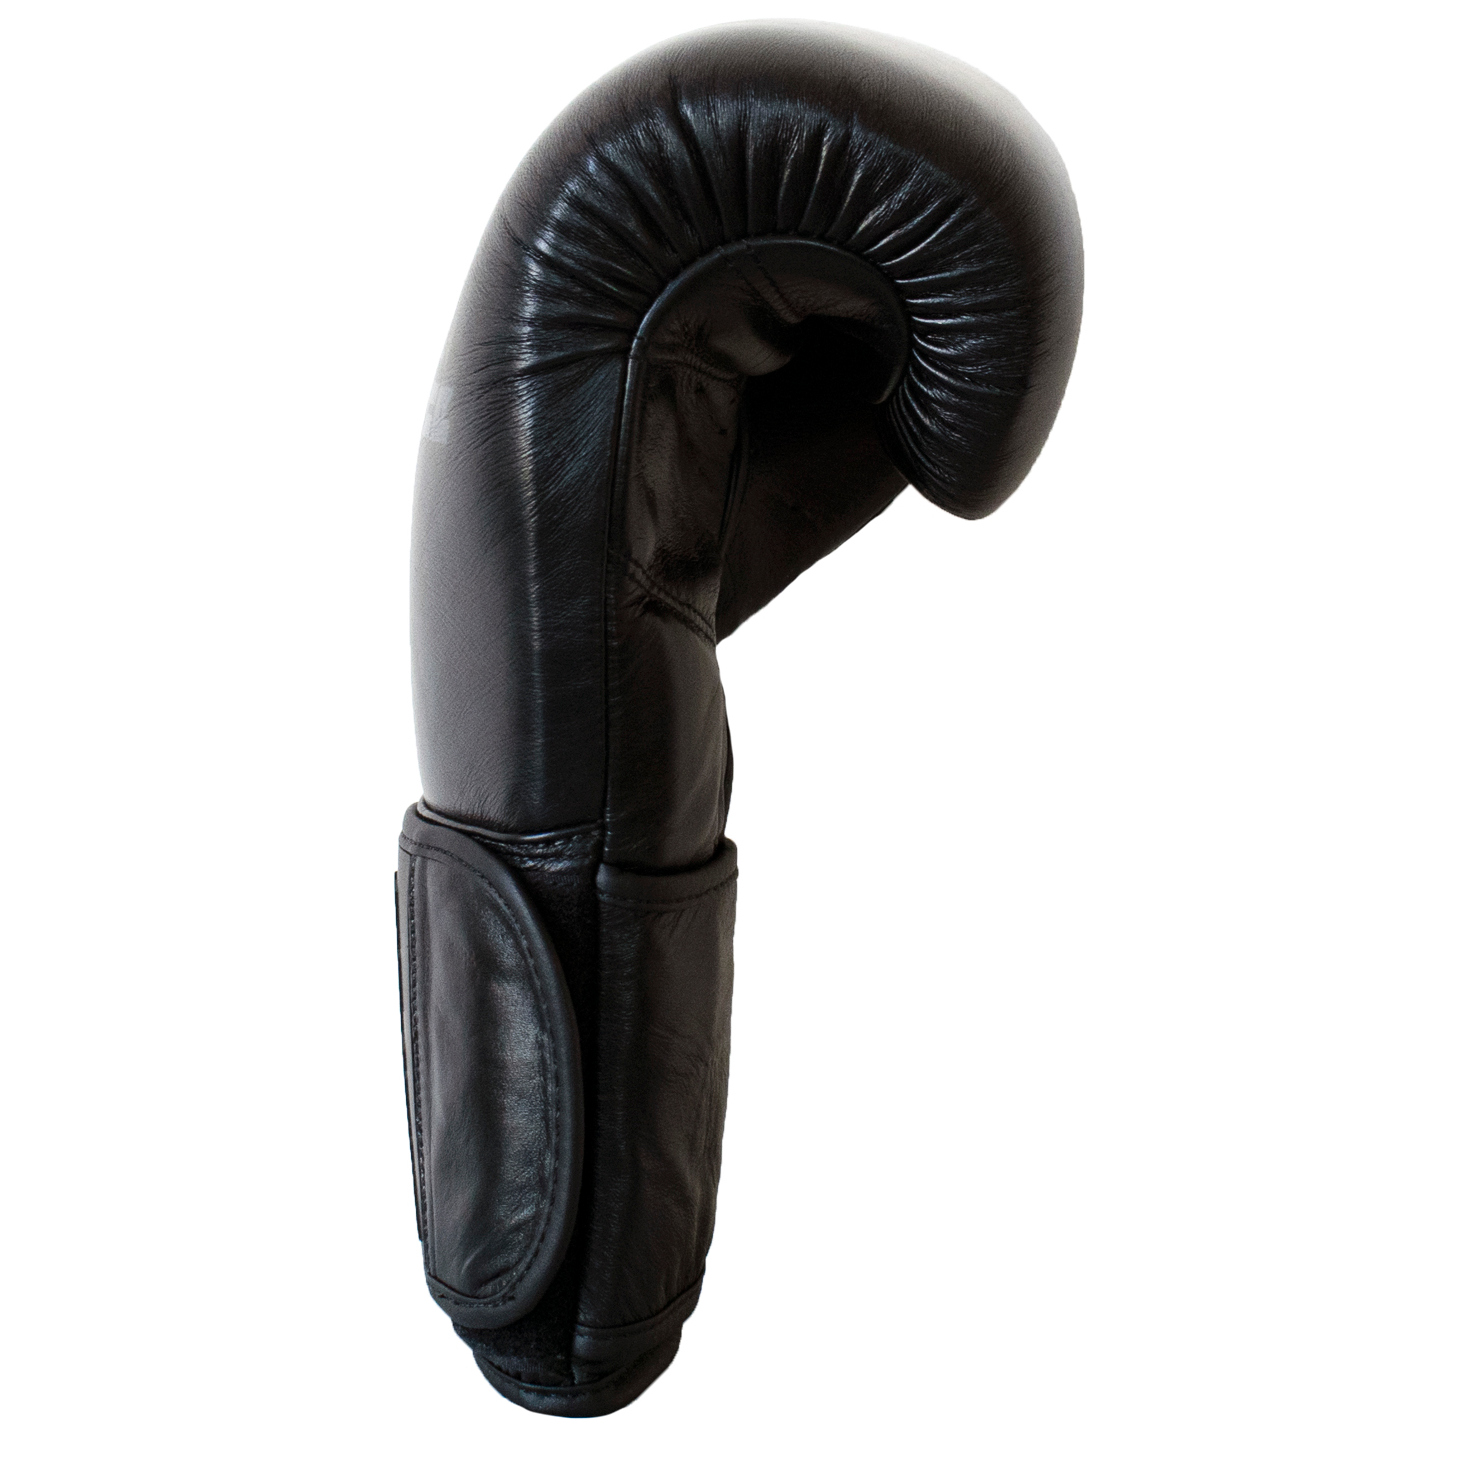  Боксерские перчатки Infinite Force Black Devil 3.0 черные  